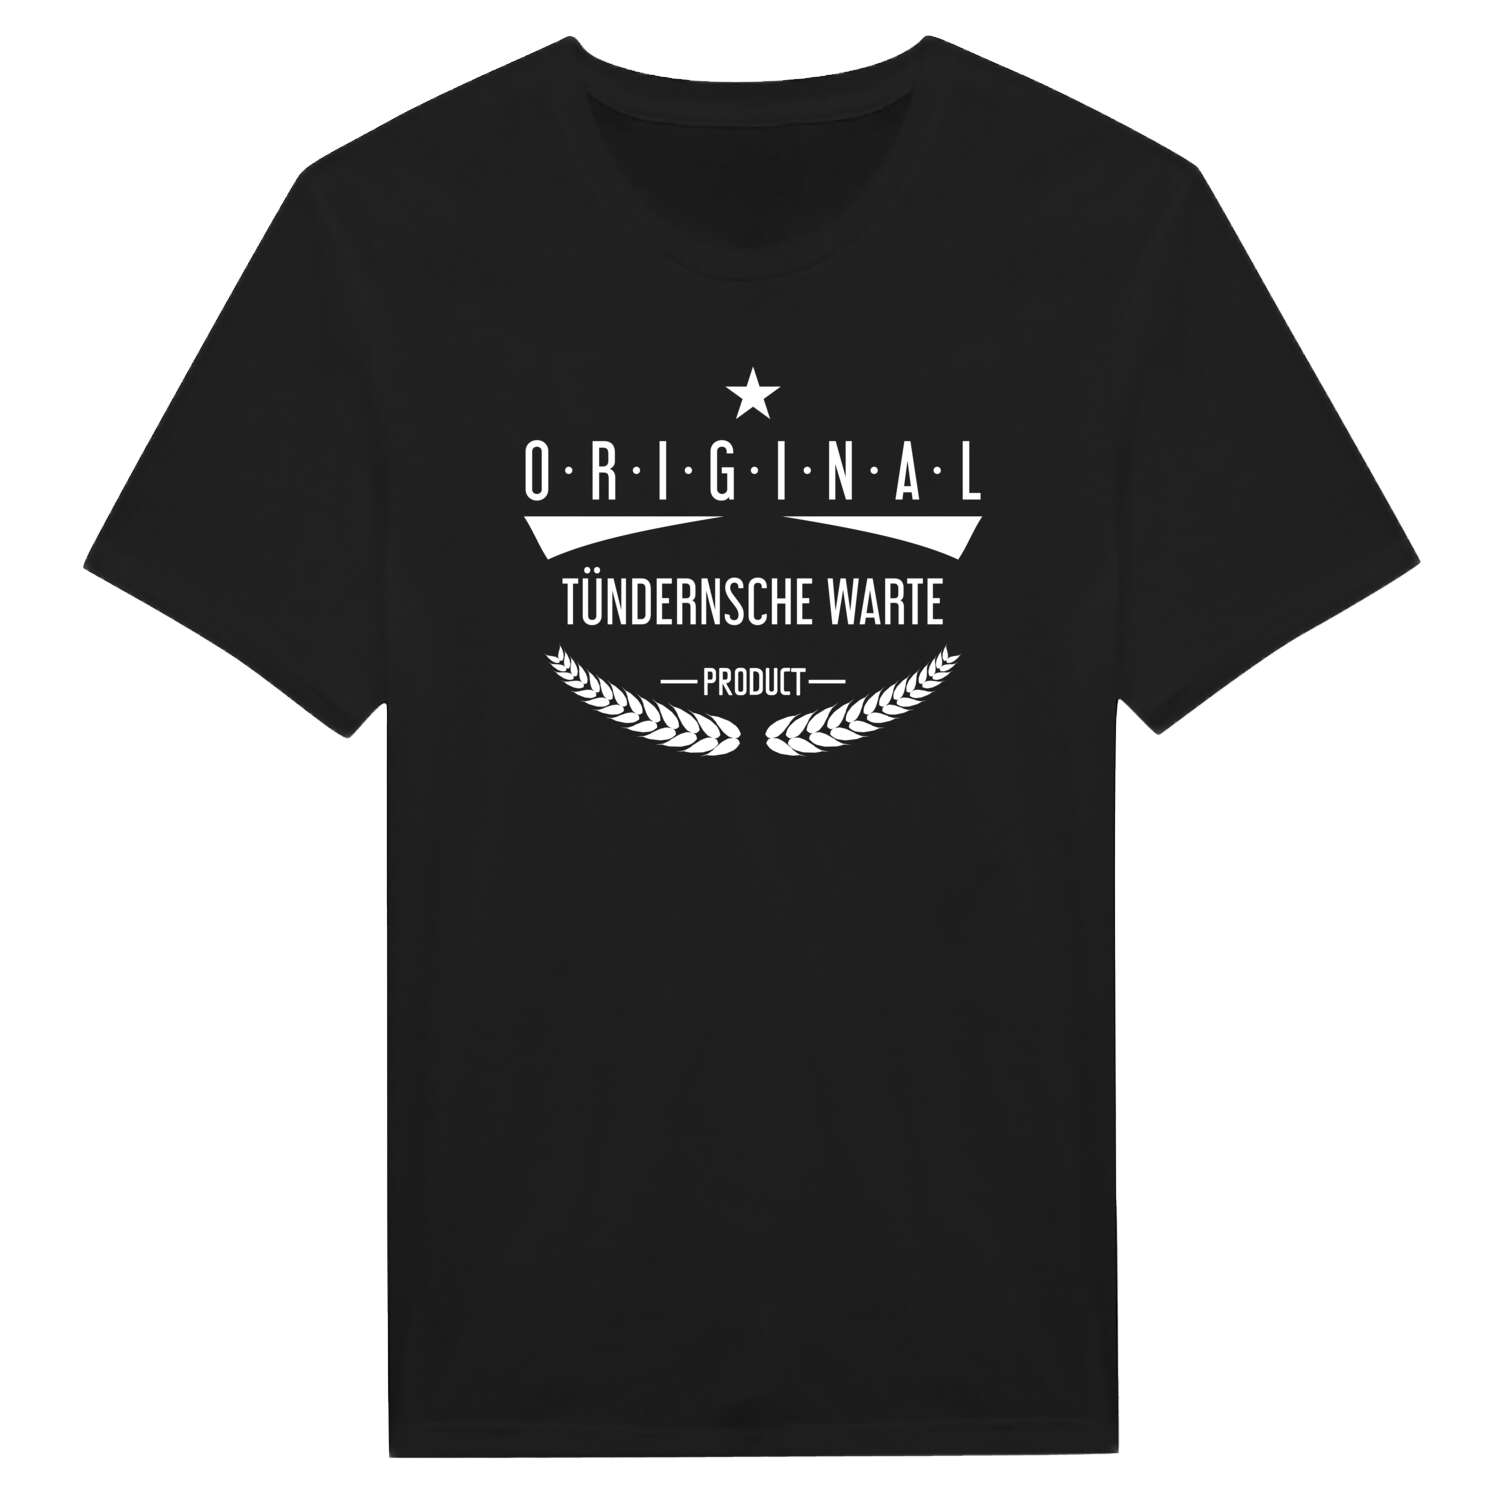 Tündernsche Warte T-Shirt »Original Product«